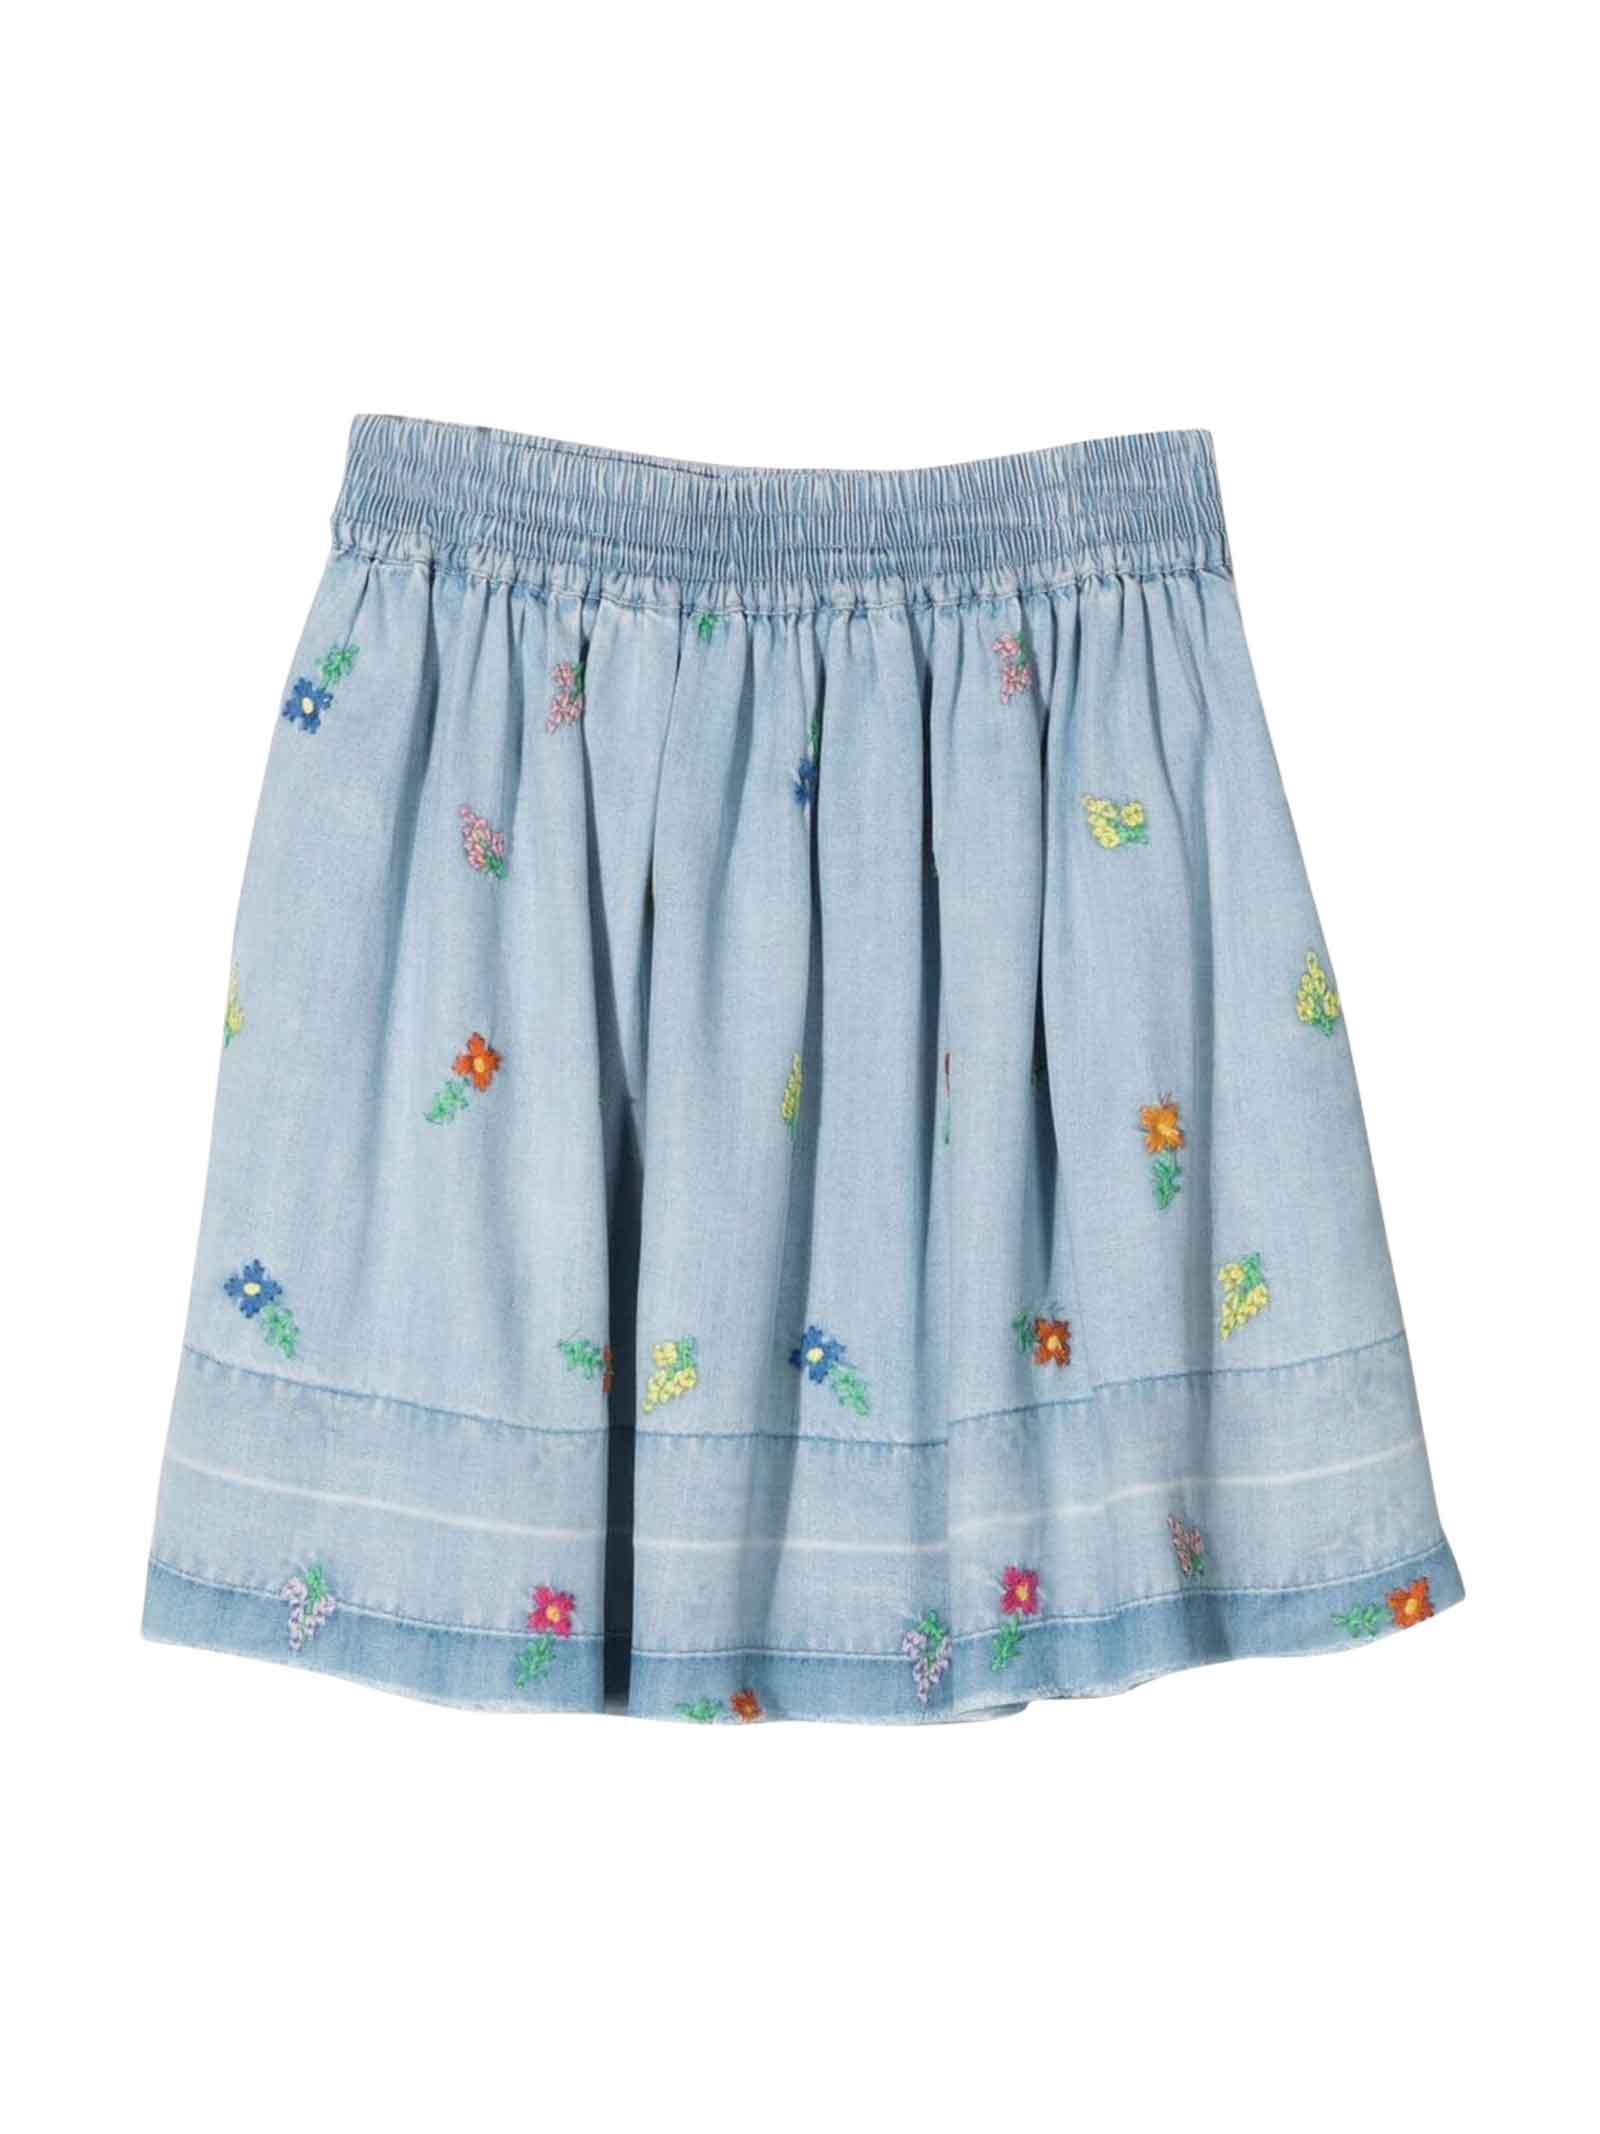 Stella McCartney Kids Baby Girl Blue Skirt